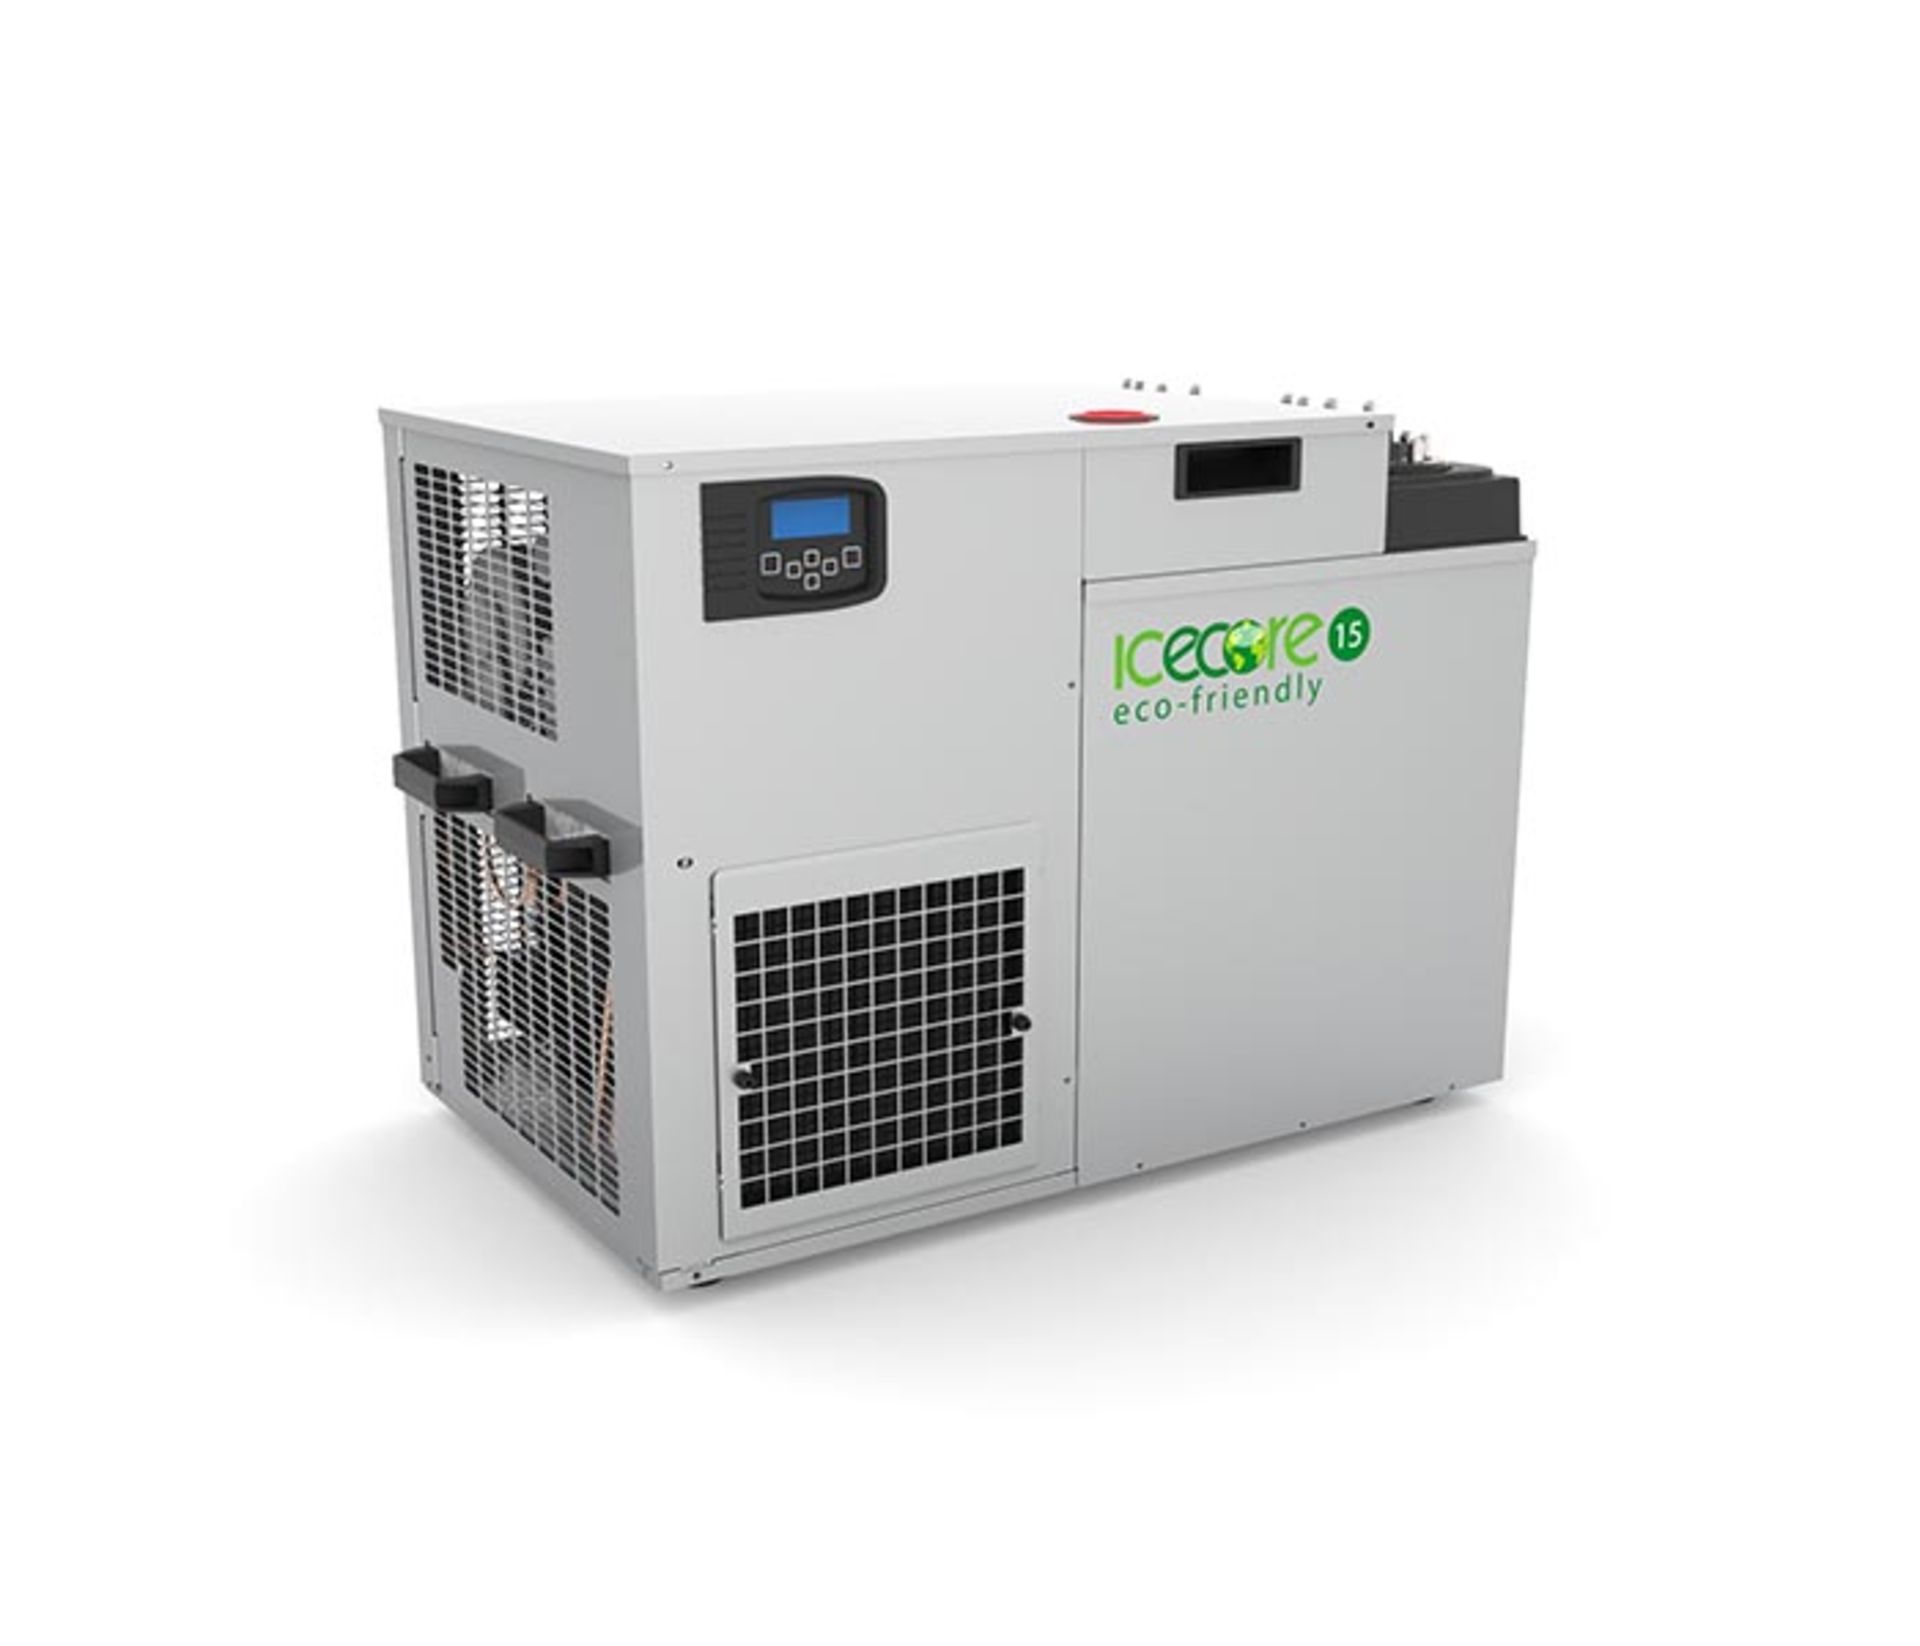 1 x Icecore Eco Friendly 15 Remote Cooler - Ref: LD347 - CL417 - Altrincham WA14